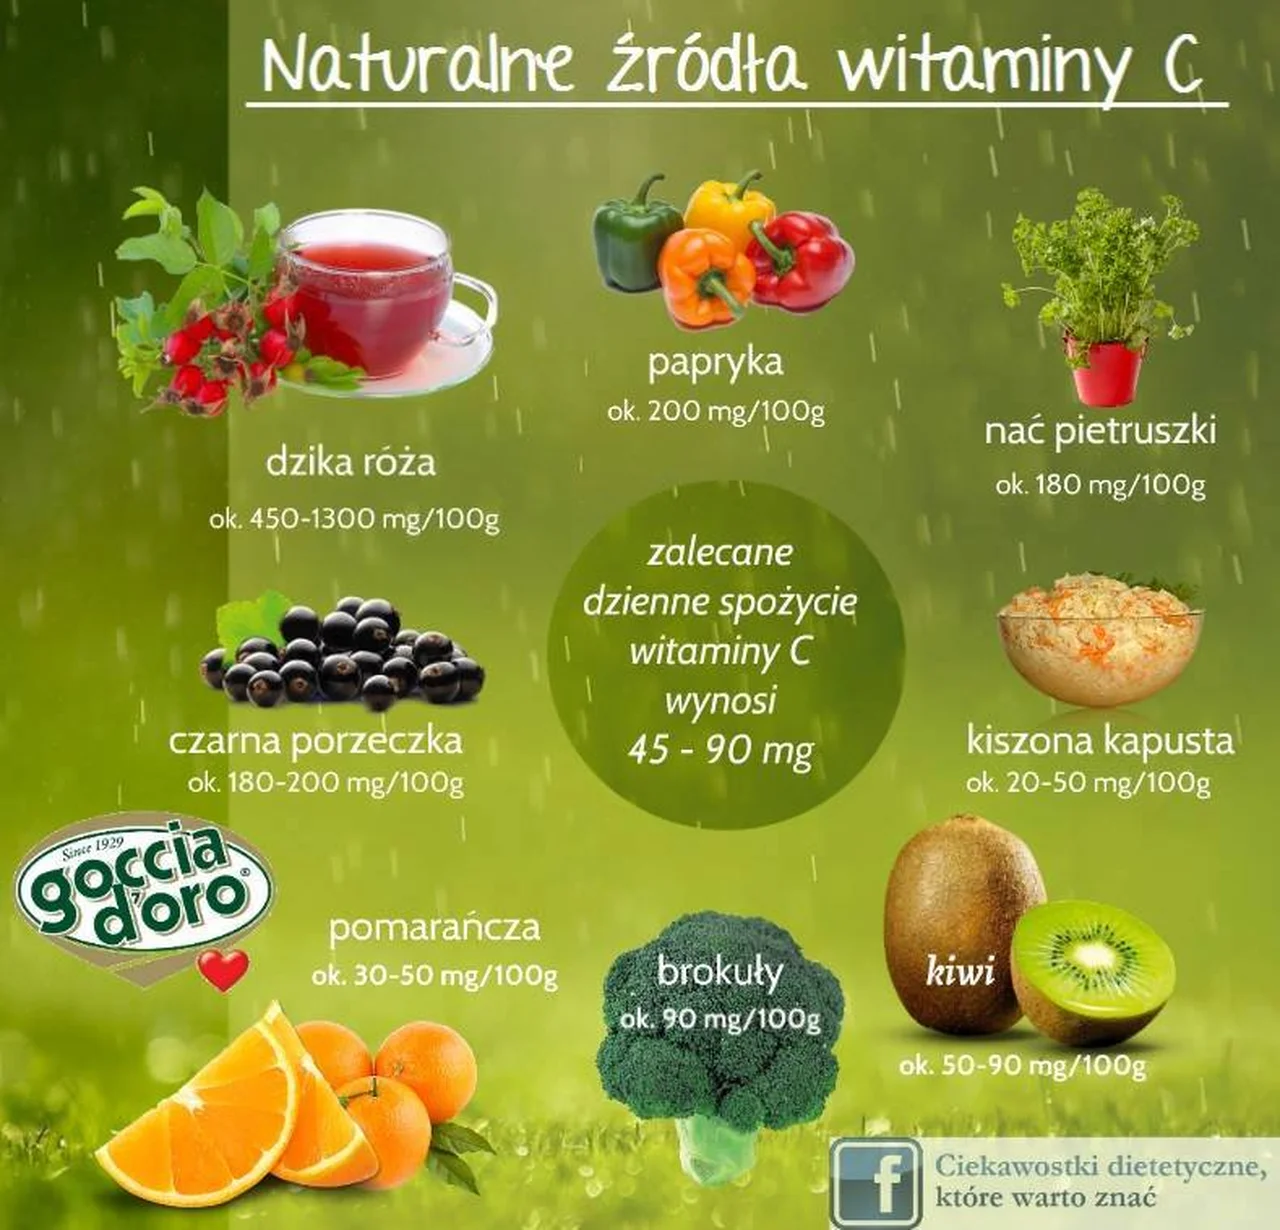 Naturalne źródła witaminy C